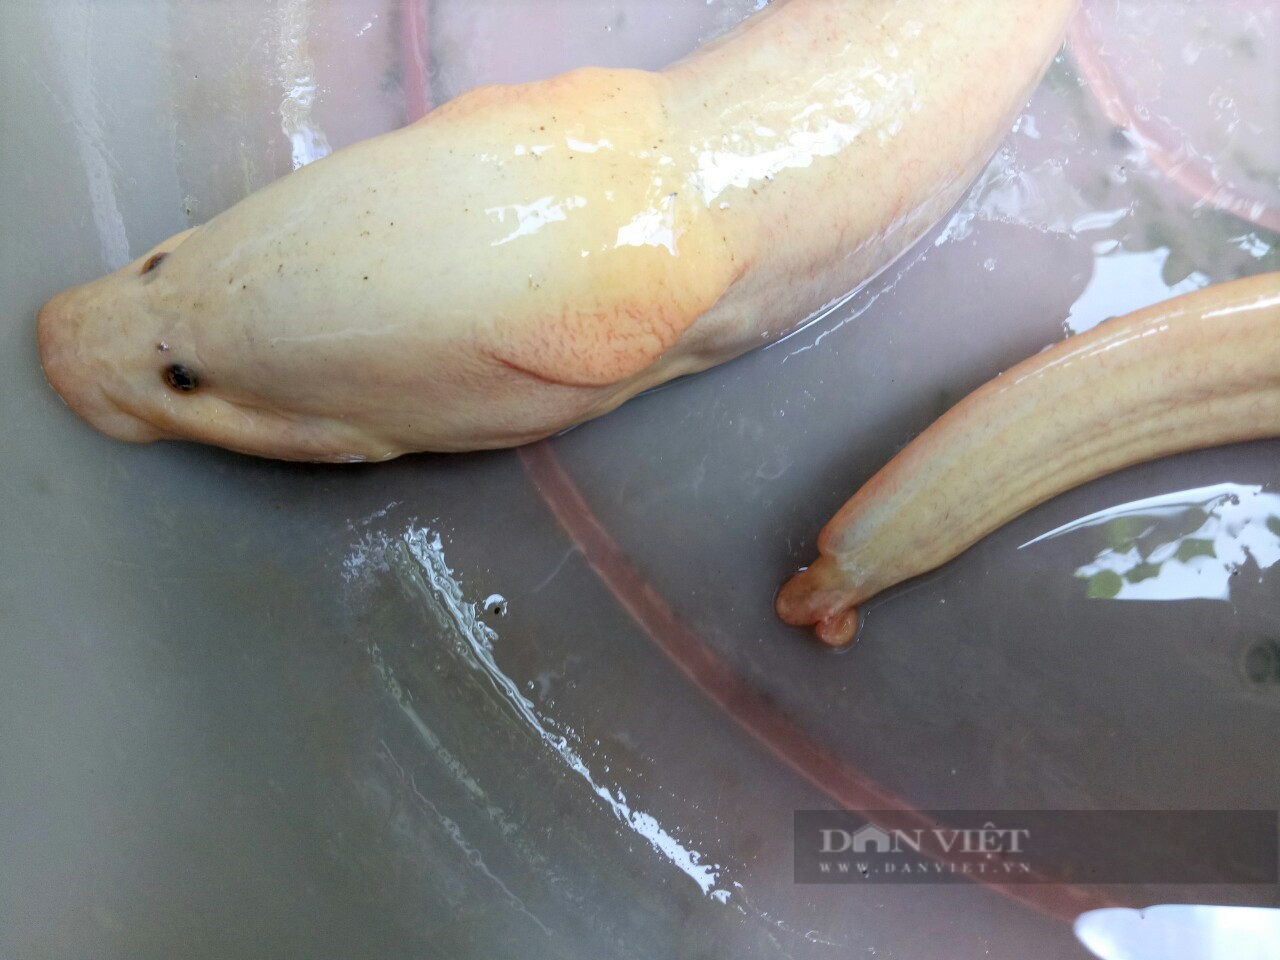 Lão nông Cà Mau sở hữu con lươn đồng màu trắng sữa hiếm gặp - Ảnh 3.